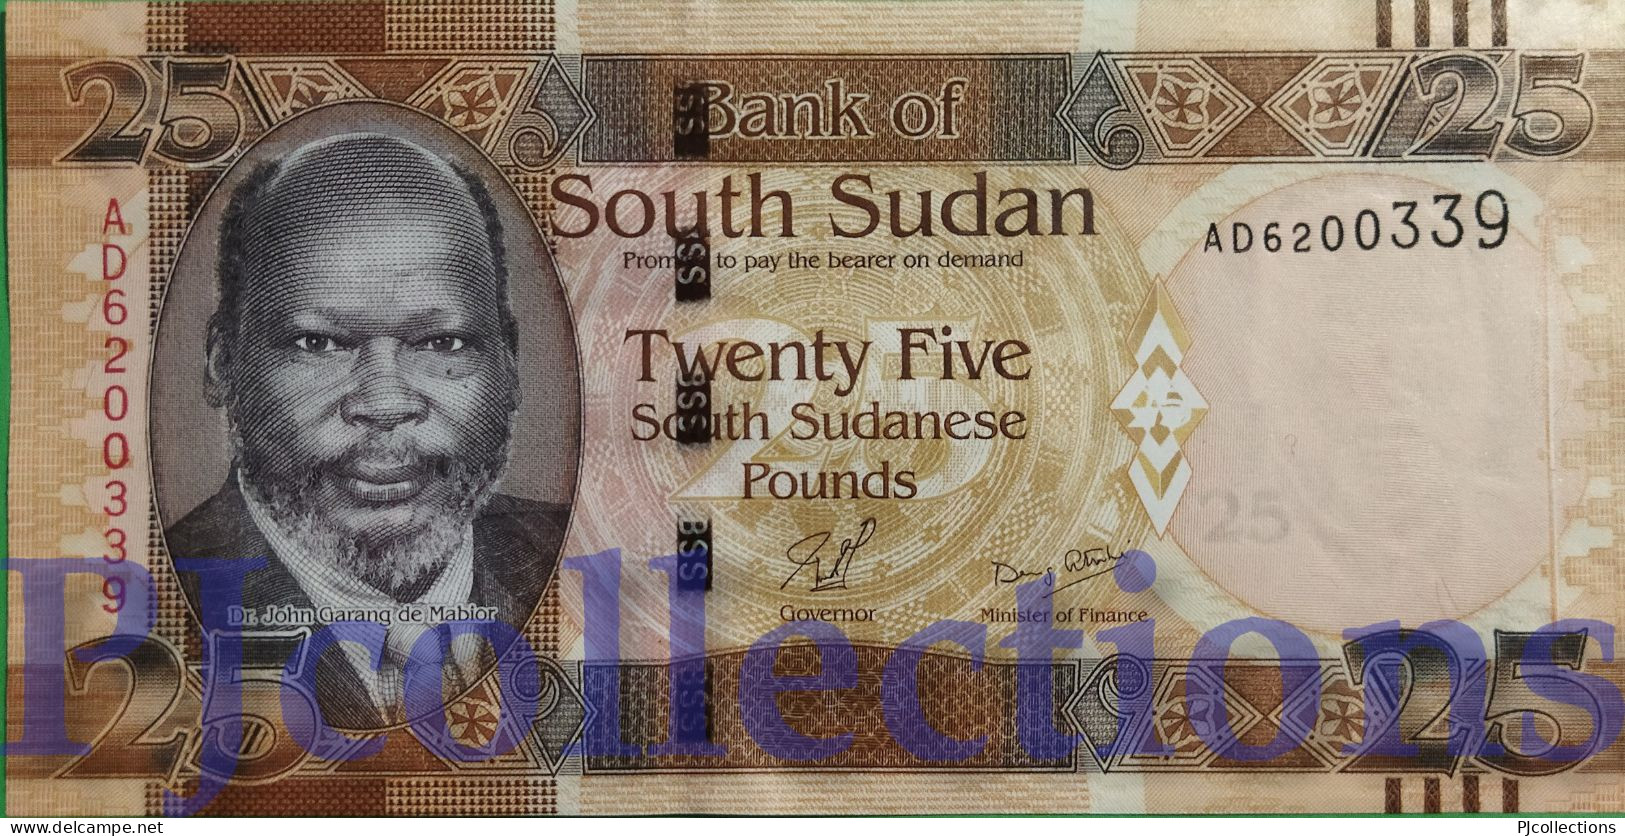 SOUTH SUDAN 25 POUNDS 2011 PICK 8 UNC - Sudán Del Sur